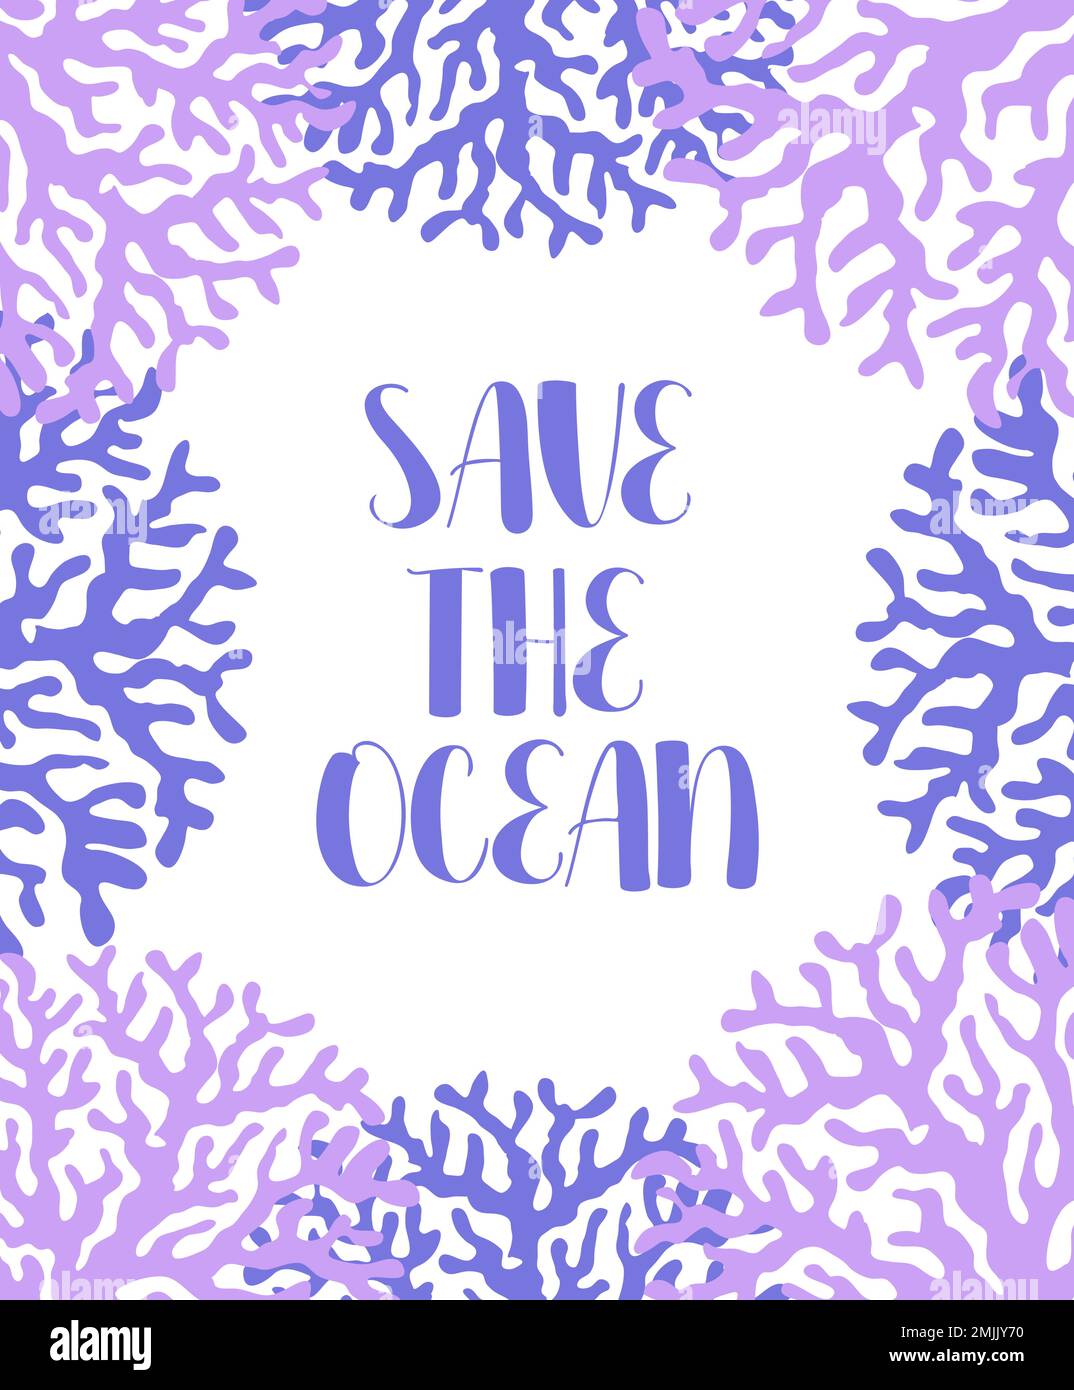 Vektor Ozean Illustration mit Korallen. Save the Ocean - Moderne Beschriftung. Unterwassertiere. Ökologisches Design für Banner, Flyer, Postkarte, Website Stock Vektor